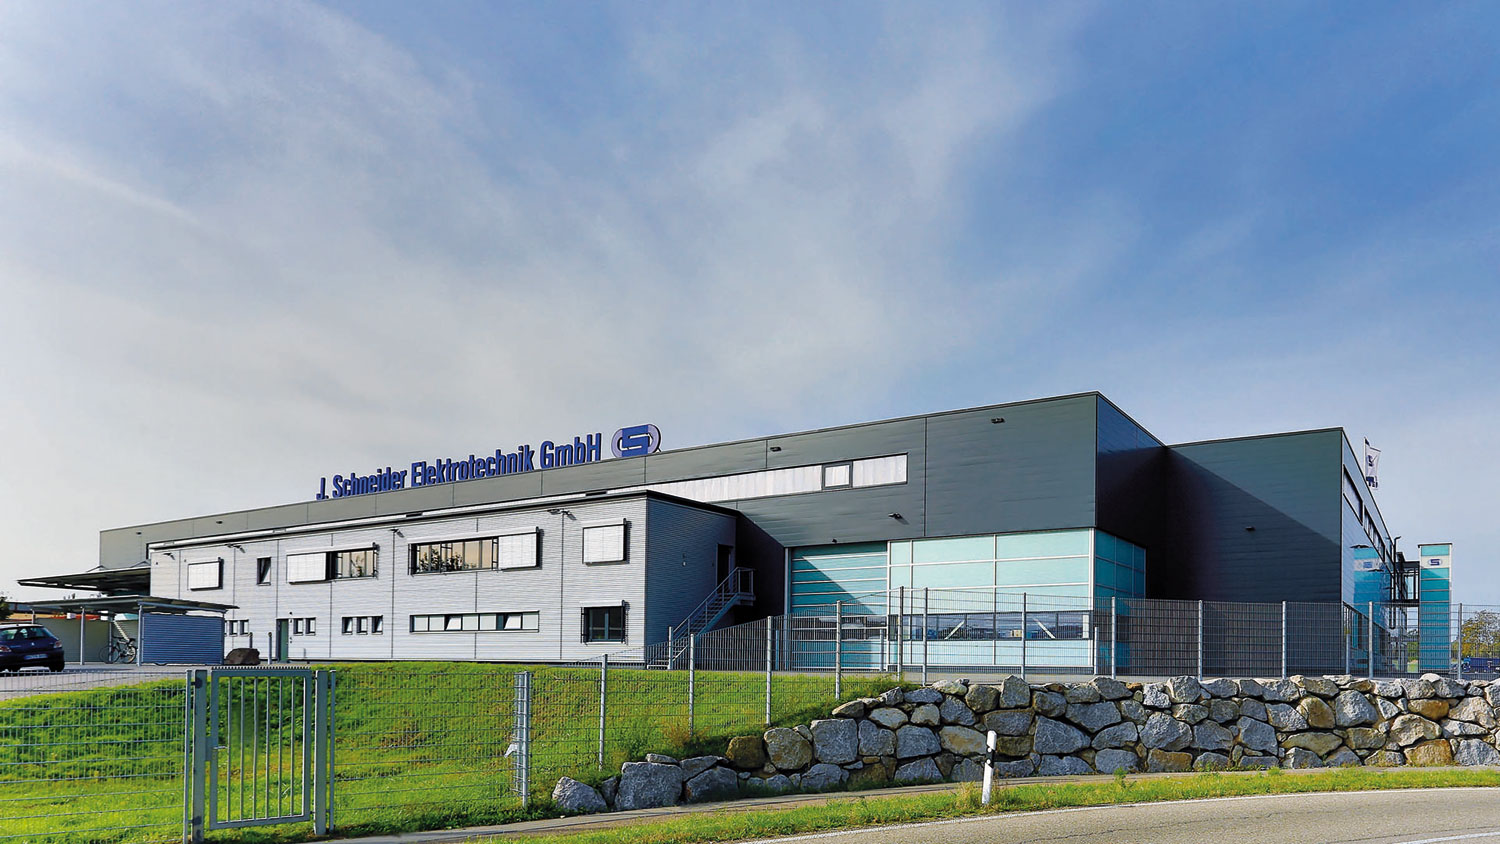 Firmensitz der J. Schneider Elektrotechnik GmbH in Offenburg